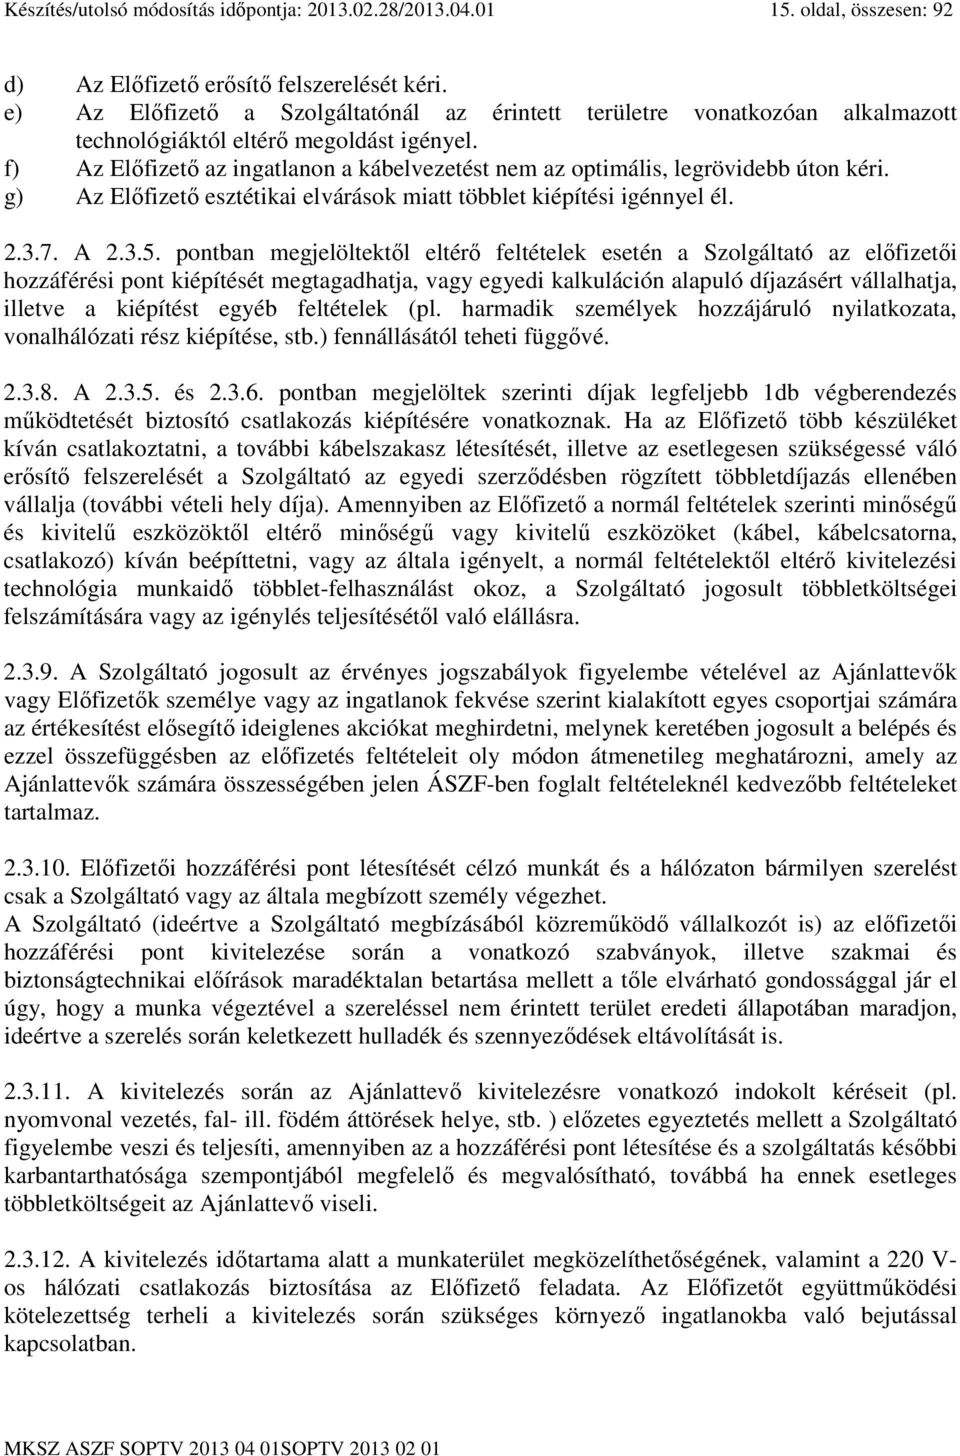 f) Az Elıfizetı az ingatlanon a kábelvezetést nem az optimális, legrövidebb úton kéri. g) Az Elıfizetı esztétikai elvárások miatt többlet kiépítési igénnyel él. 2.3.7. A 2.3.5.